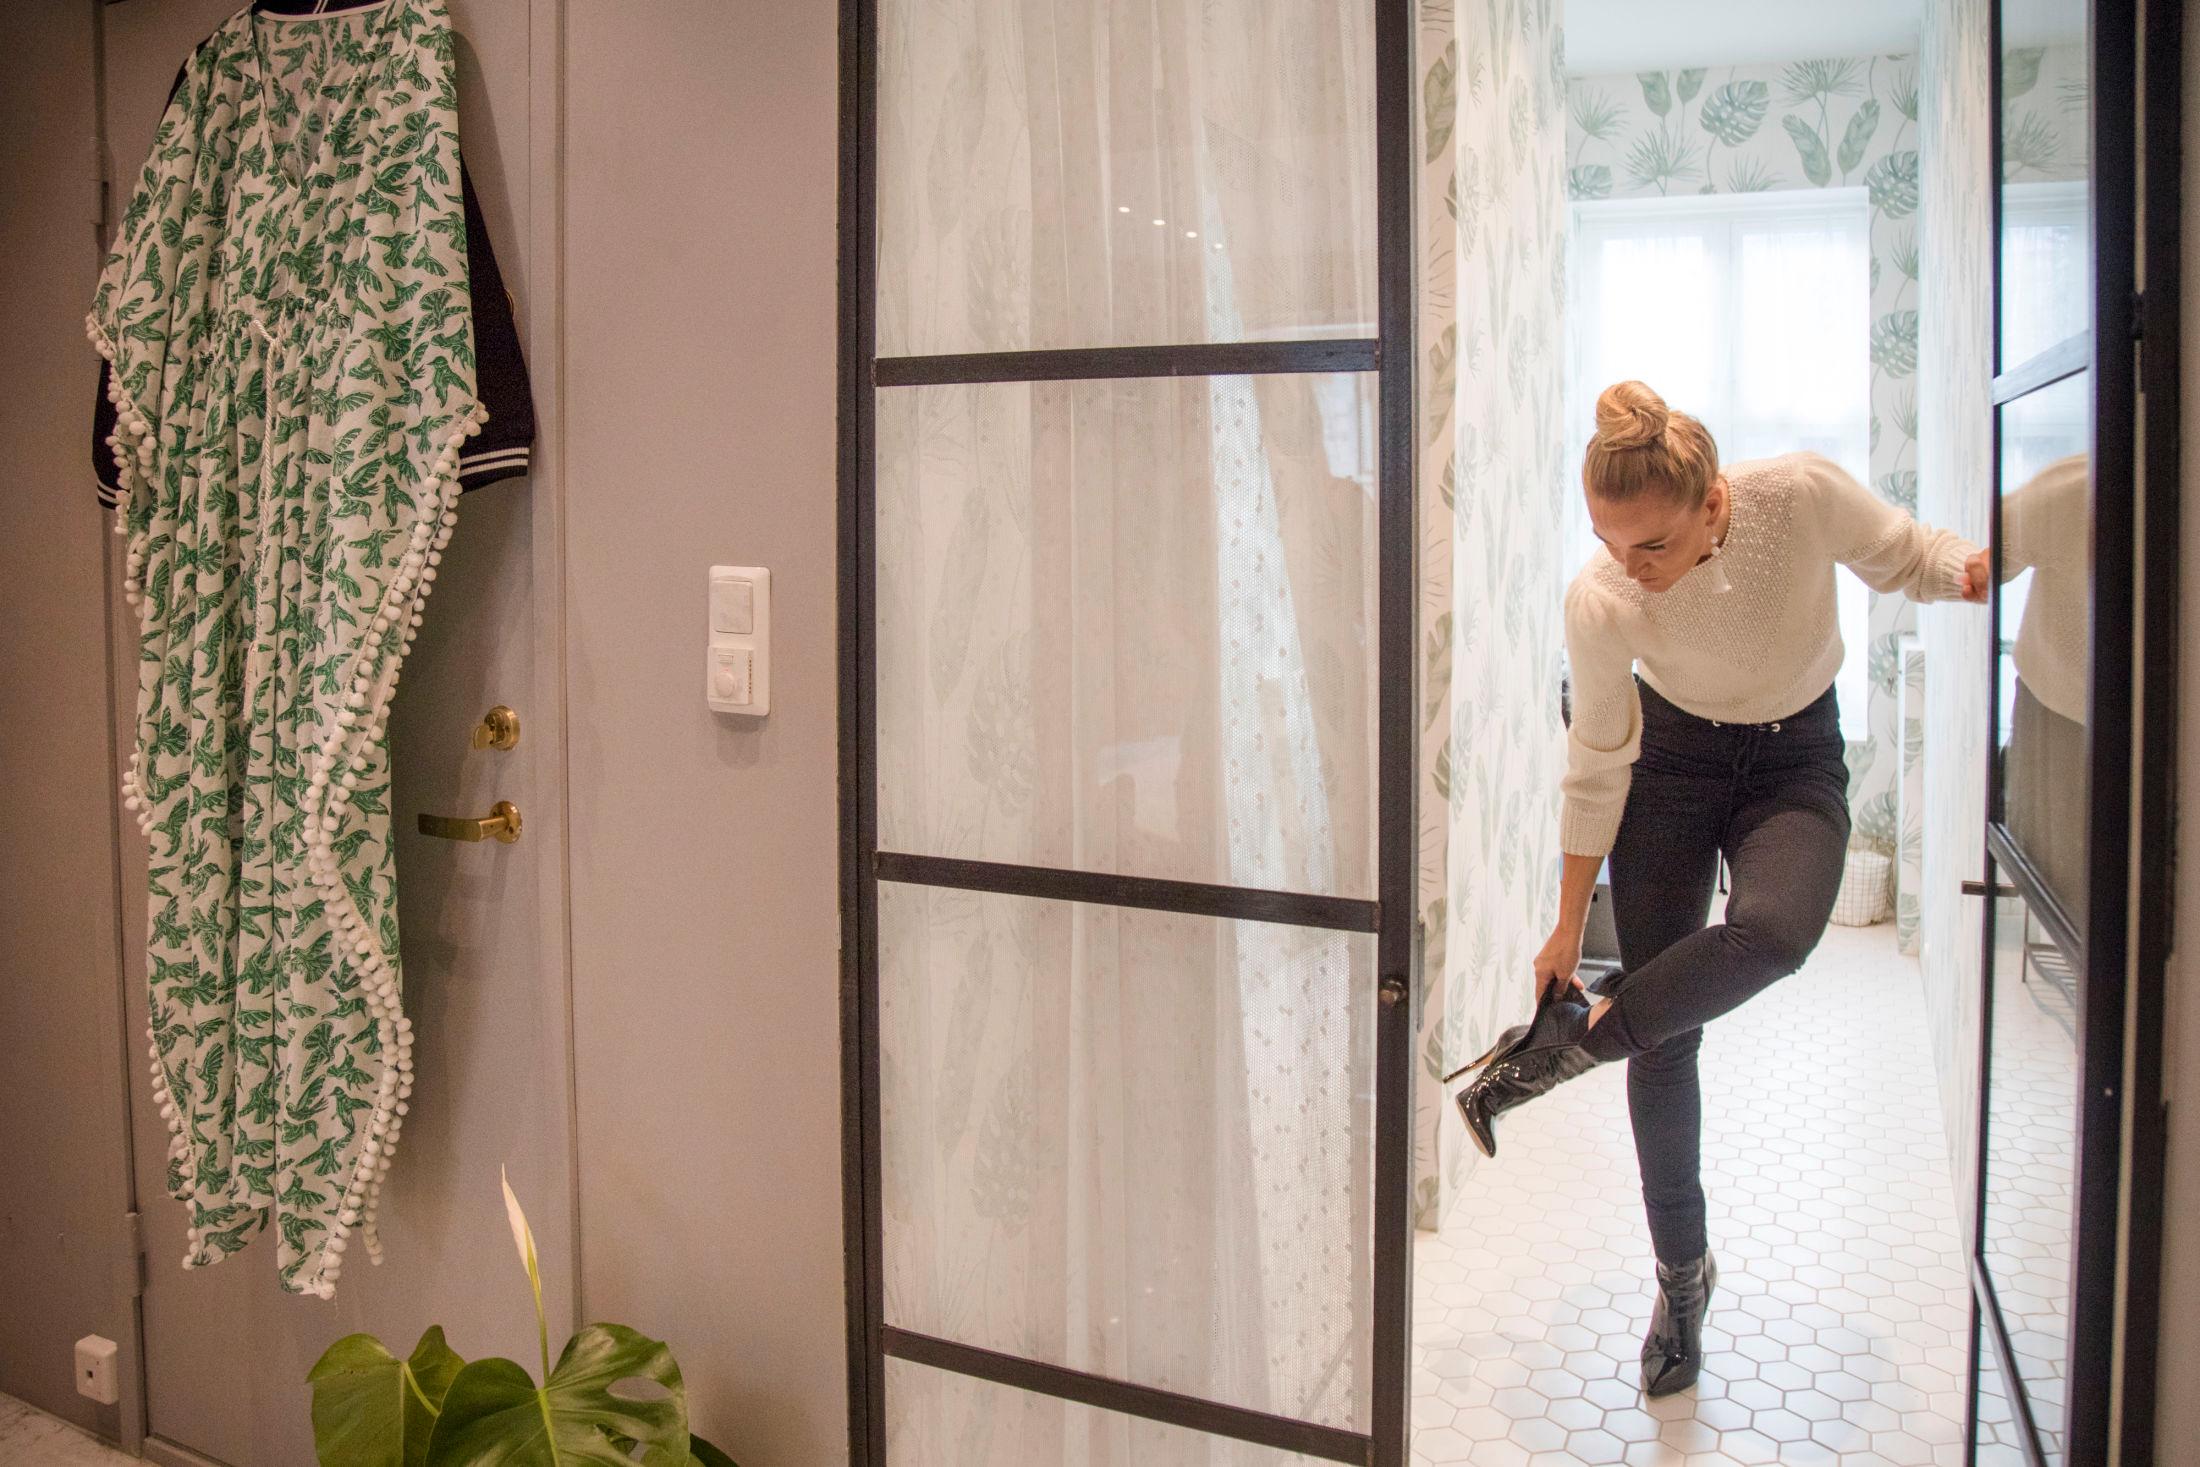 MODERNE: Krogh overtok lokalet i Behrensgate i september og har pusset det opp fra grunnen av. Hun har valgt nesten samme stil i det nye huset sitt ved Vigelandsparken i Oslo. Foto: Annemor Larsen / VG